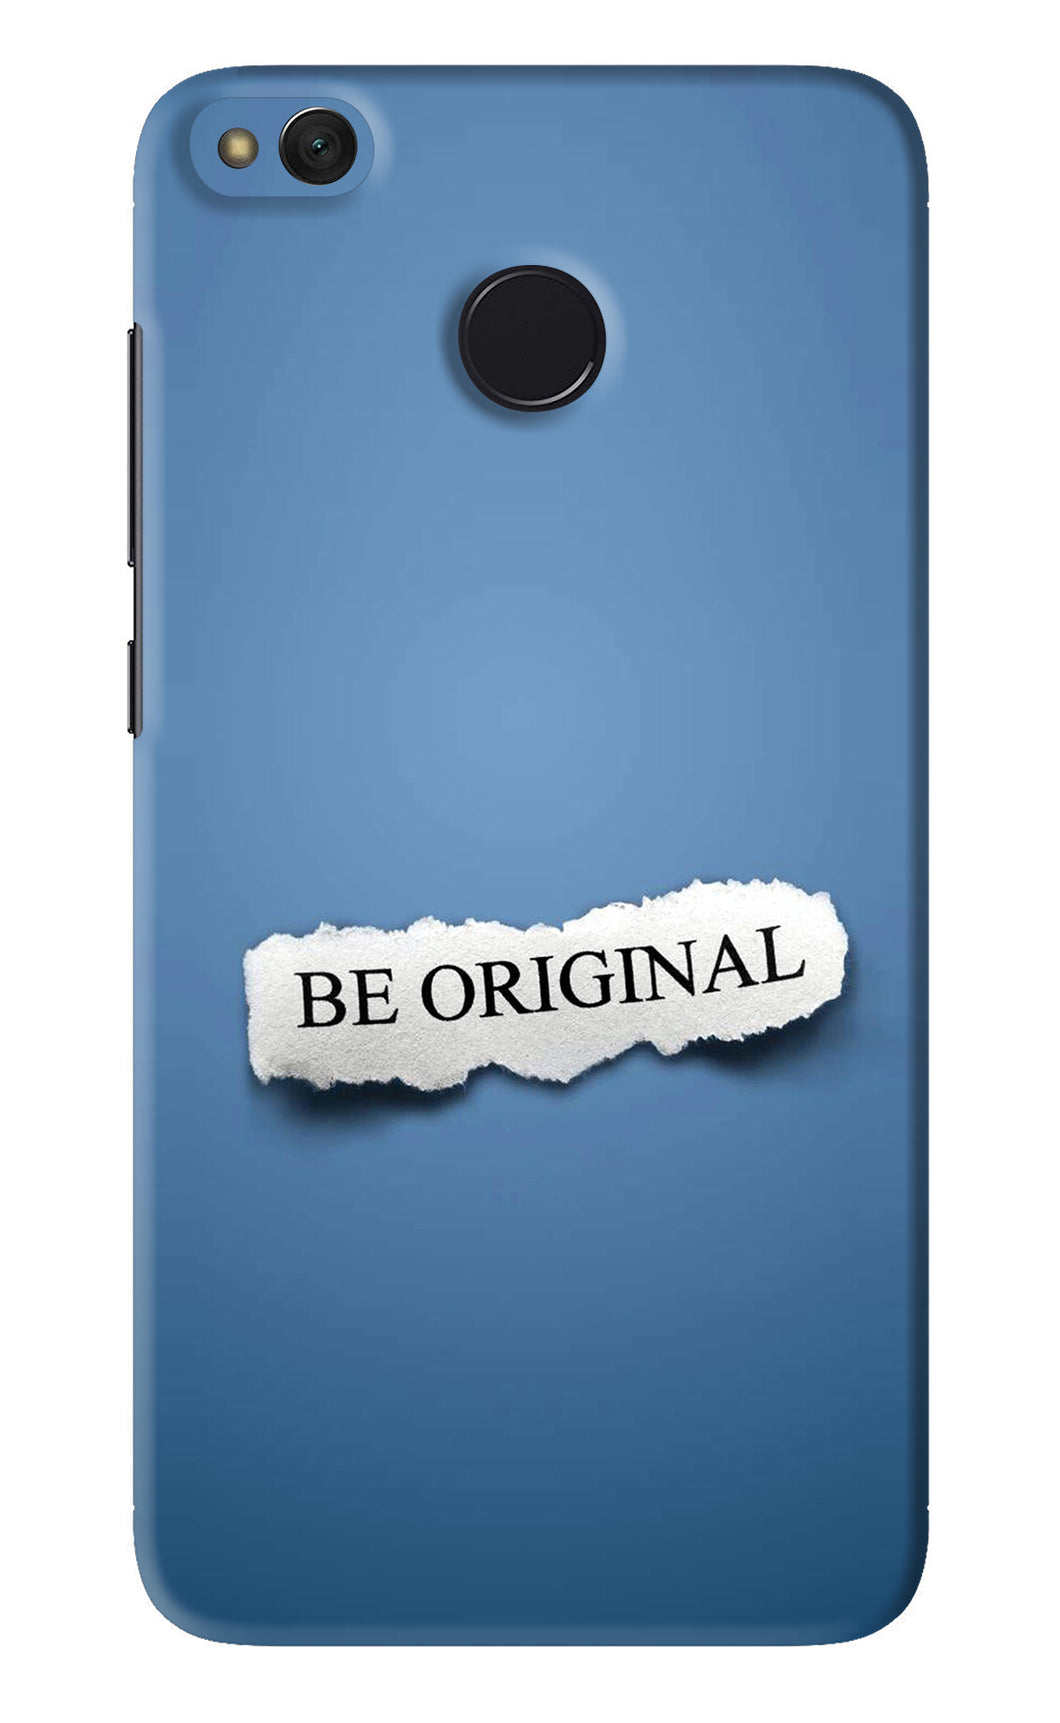 Be Original Xiaomi Redmi 4 Back Skin Wrap